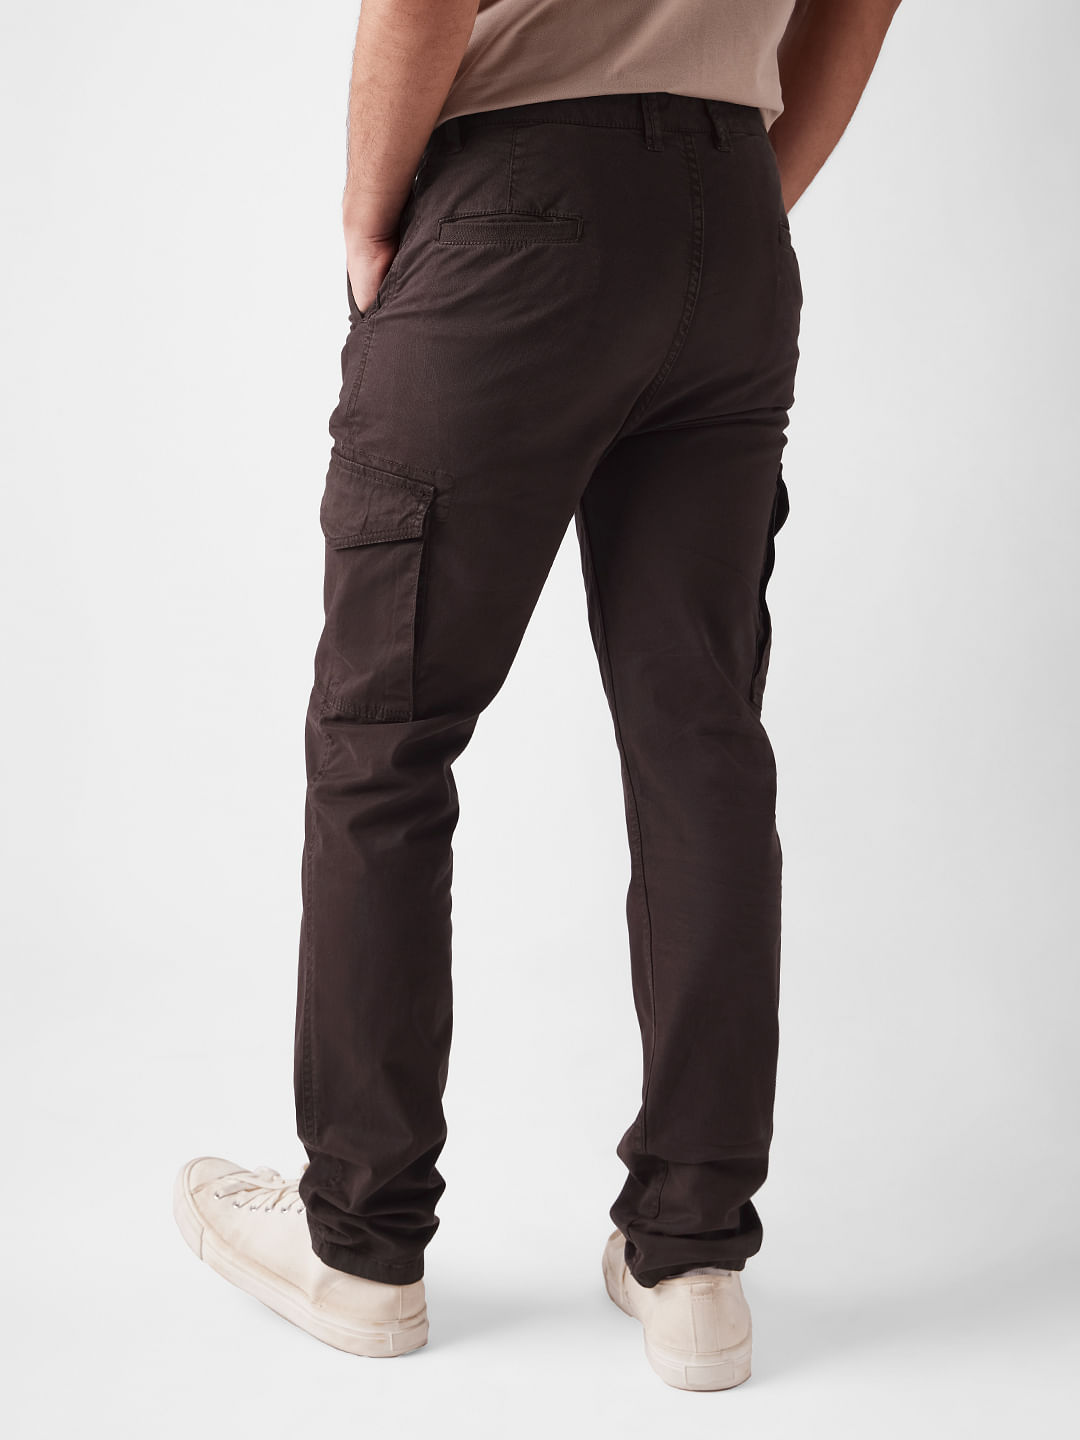 Buy Solids: Brown Men Cargo Pants Online